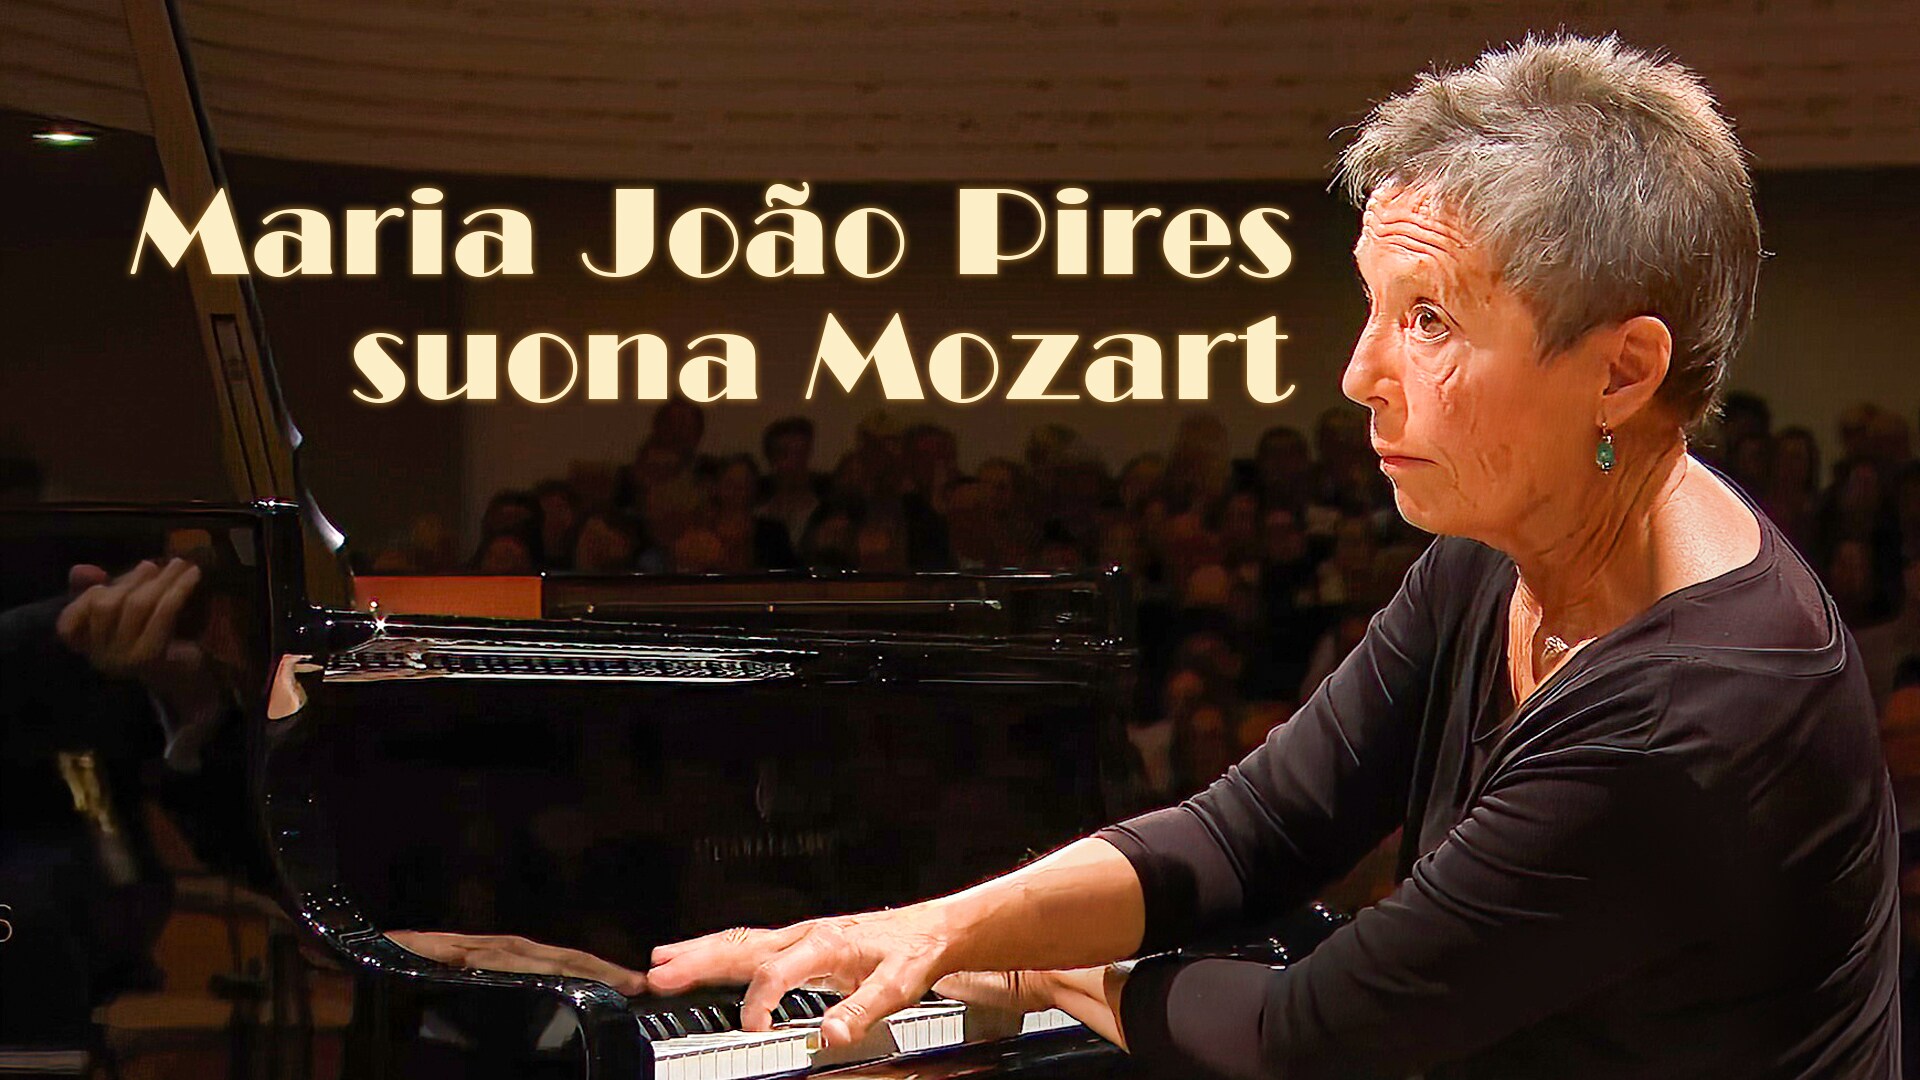 Maria João Pires suona Mozart